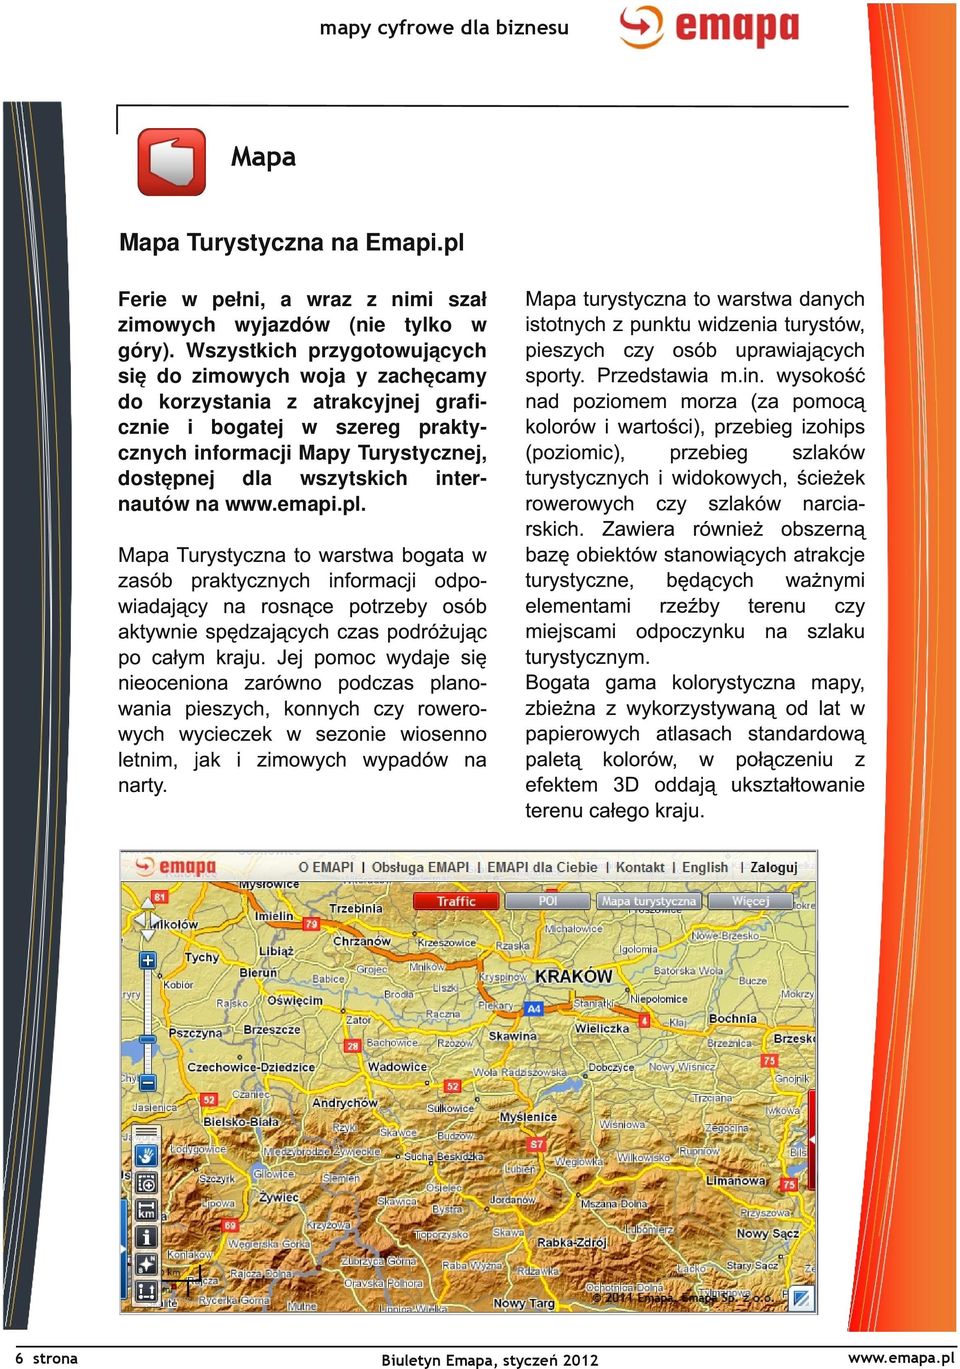 nautów na www.emapi.pl. Mapa Turystyczna to warstwa bogata w zasób praktycznych informacji odpowiadający na rosnące potrzeby osób aktywnie spędzających czas podróżując po całym kraju.